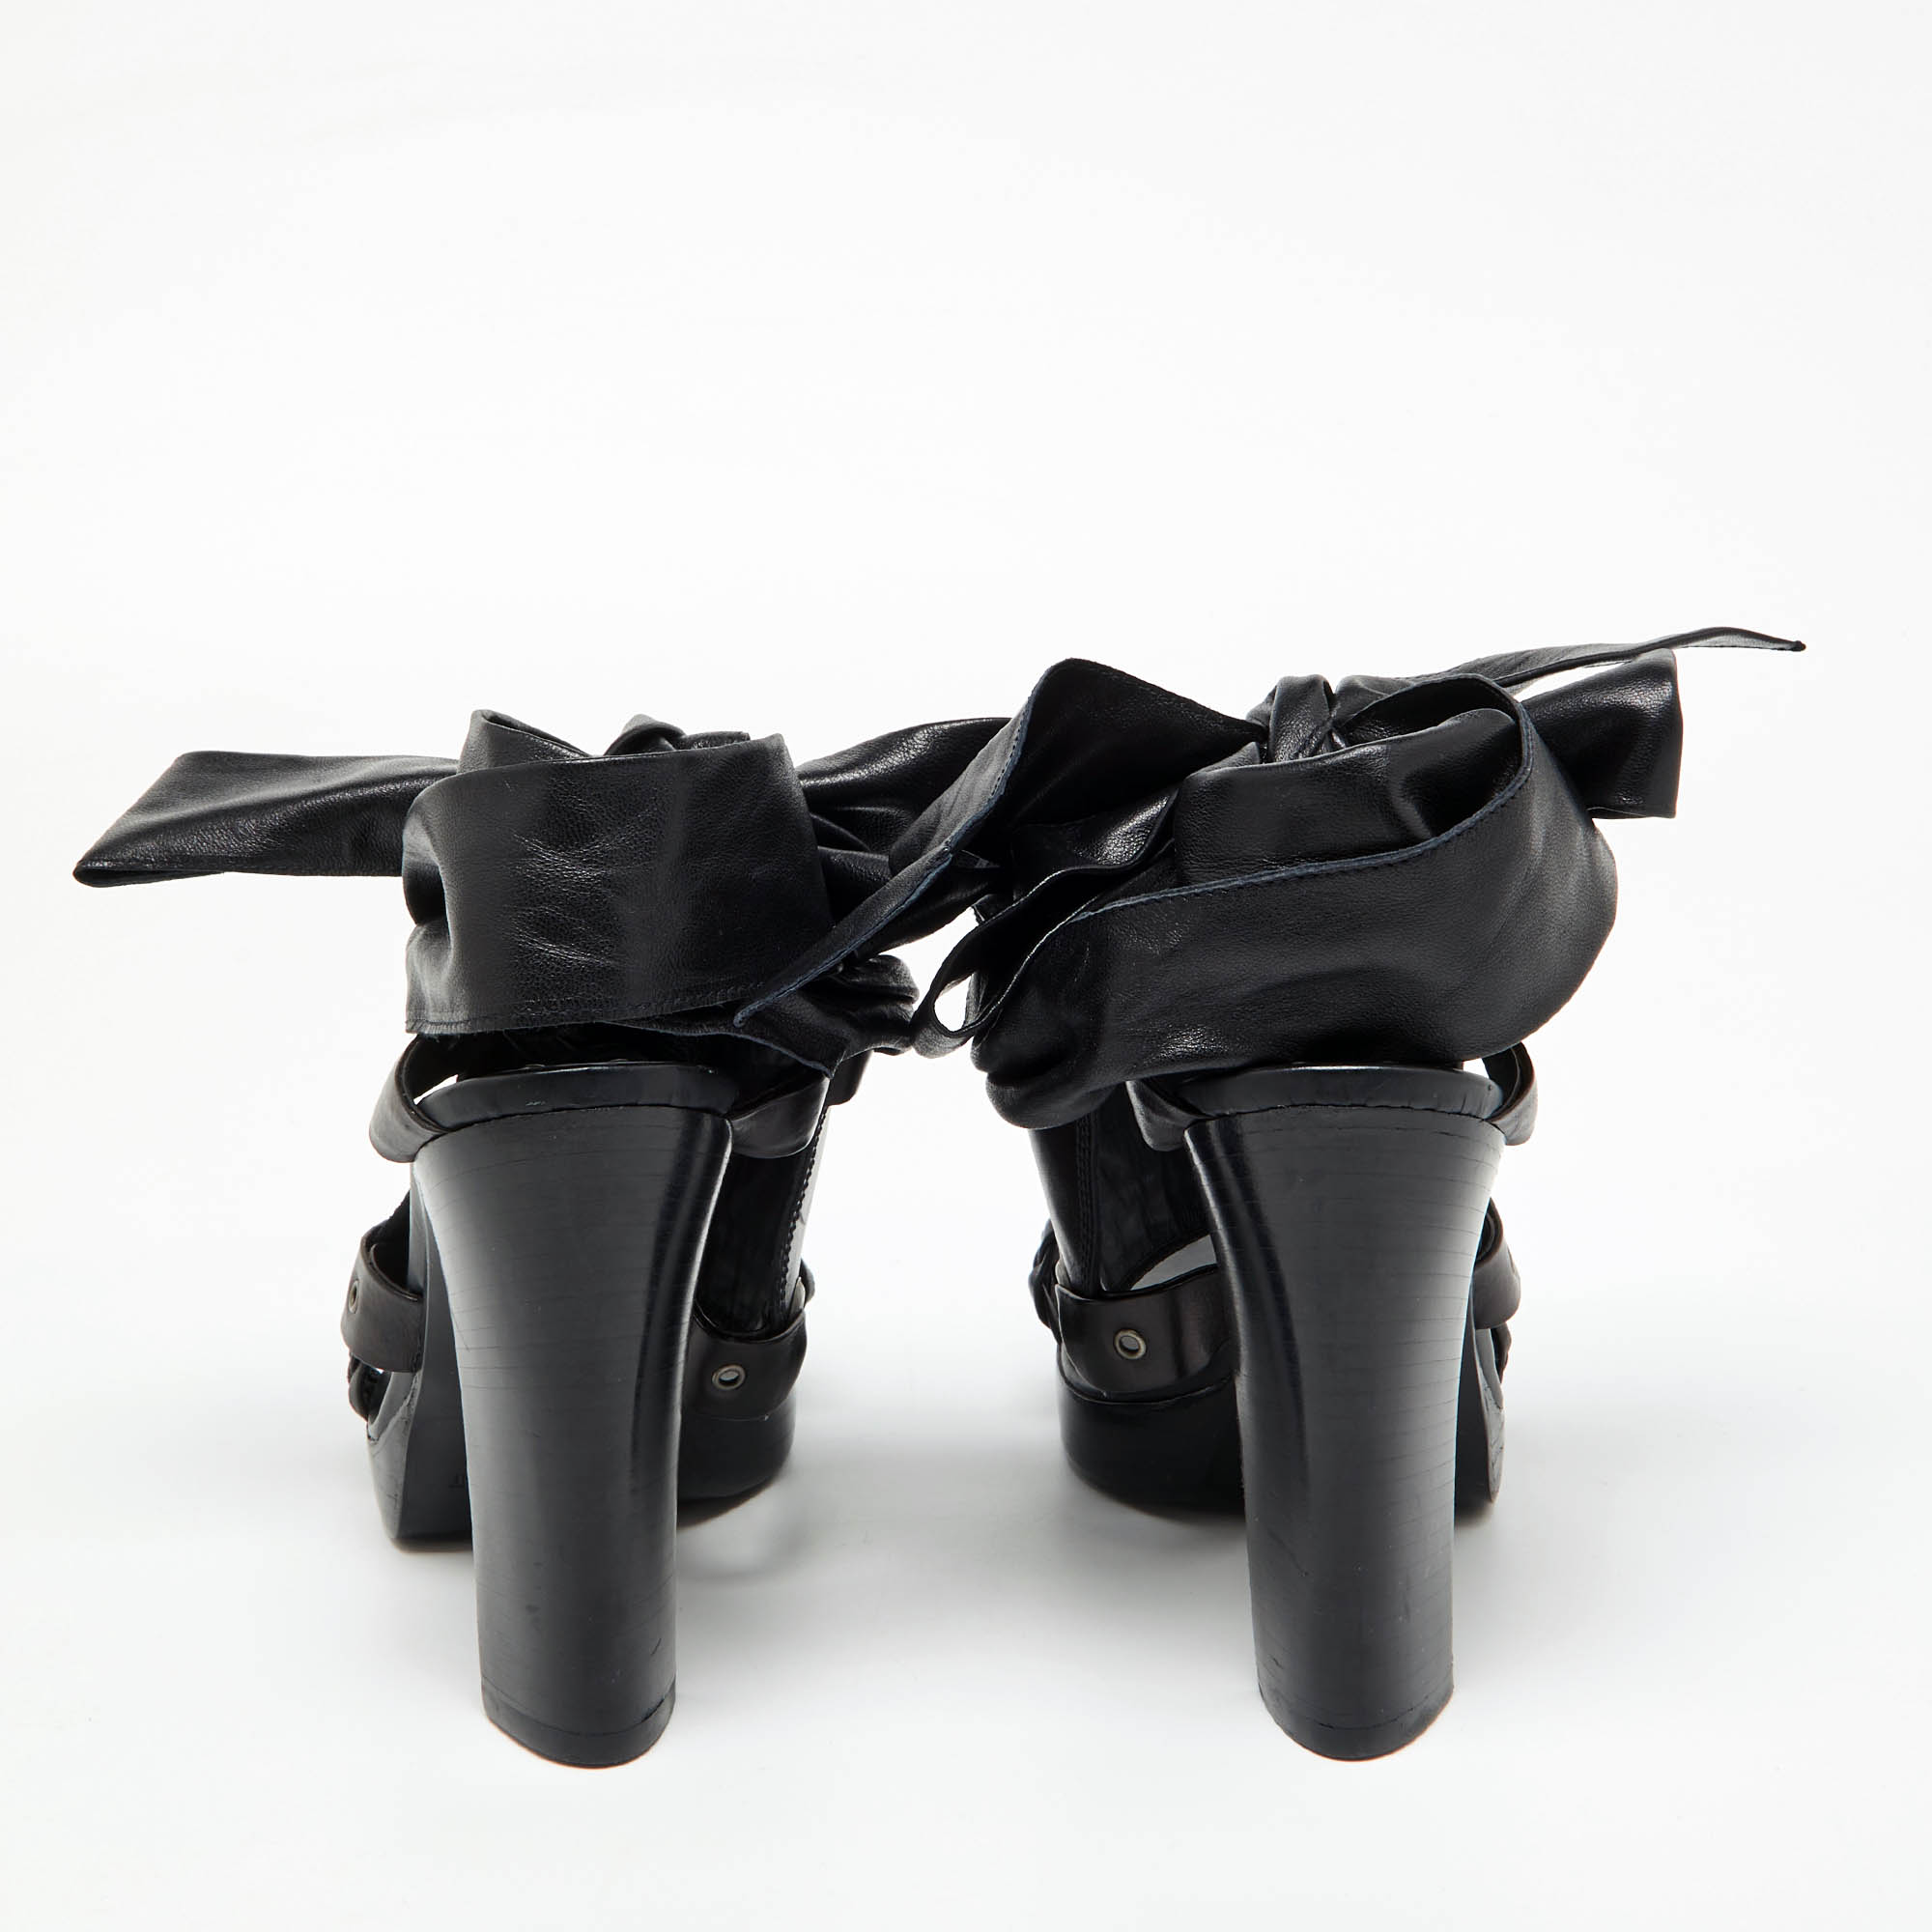 Yves Saint Laurent Black Leather Open Toe Ankle Wrap Sandals Size 37